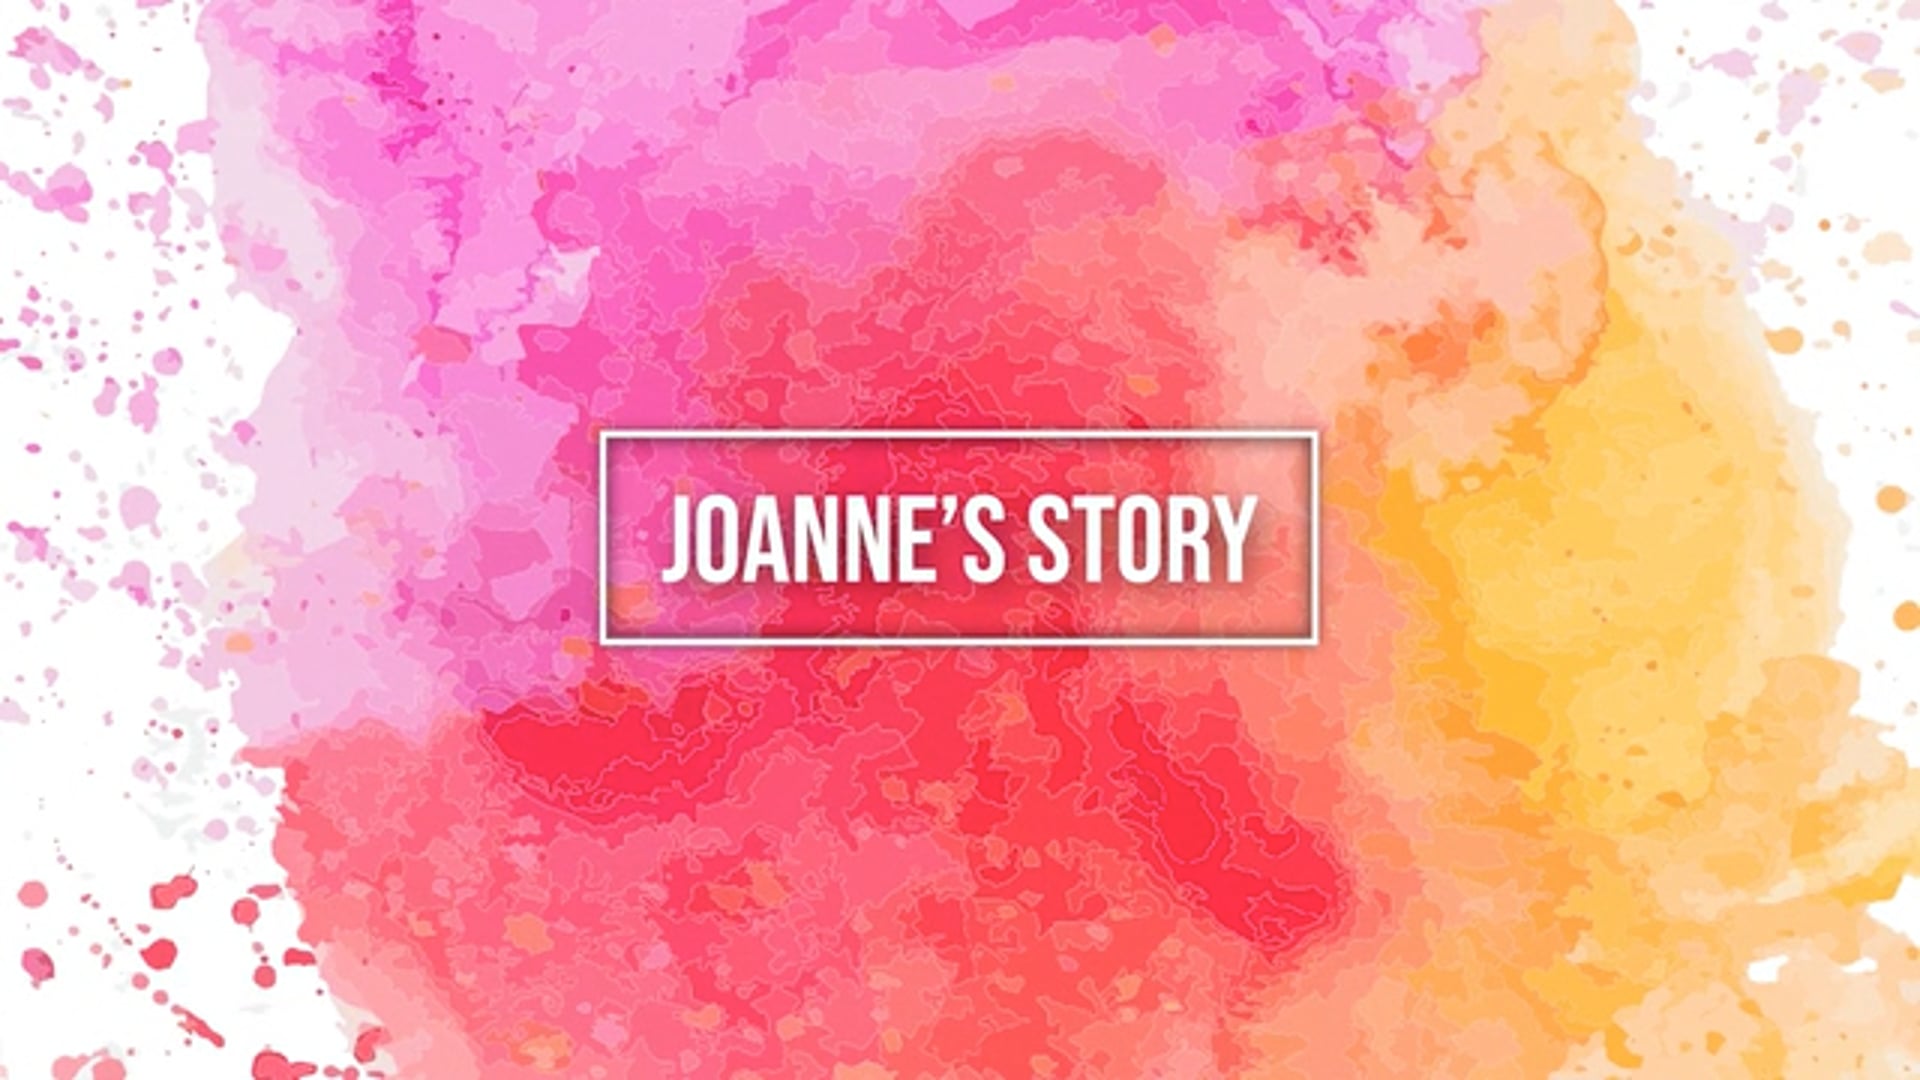 Joanne's Story